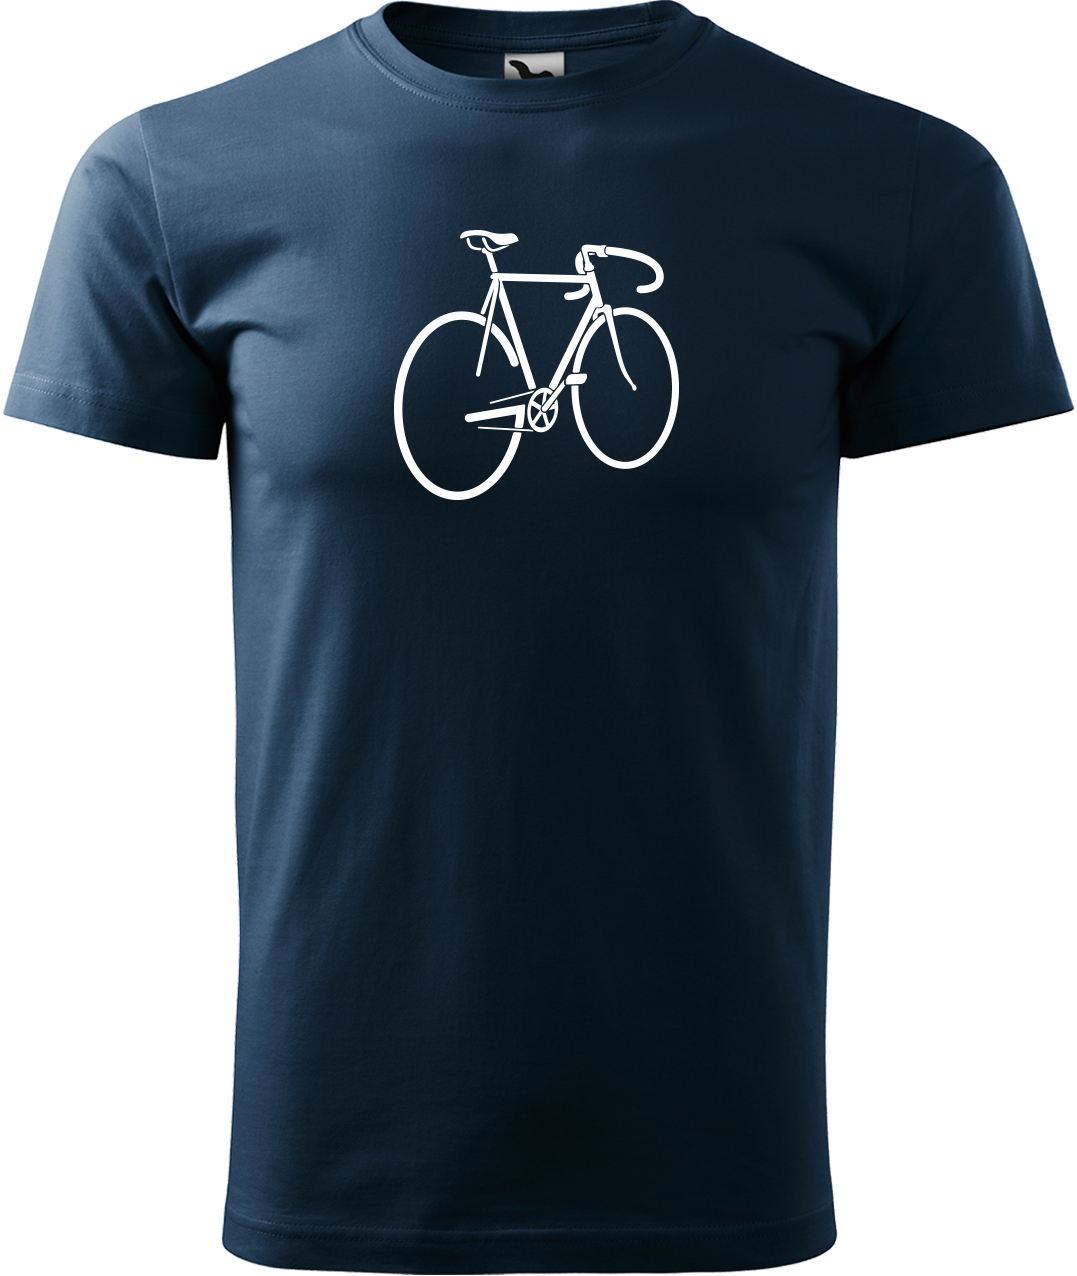 Pánské tričko s kolem - Pánské kolo Velikost: 4XL, Barva: Námořní modrá (02)